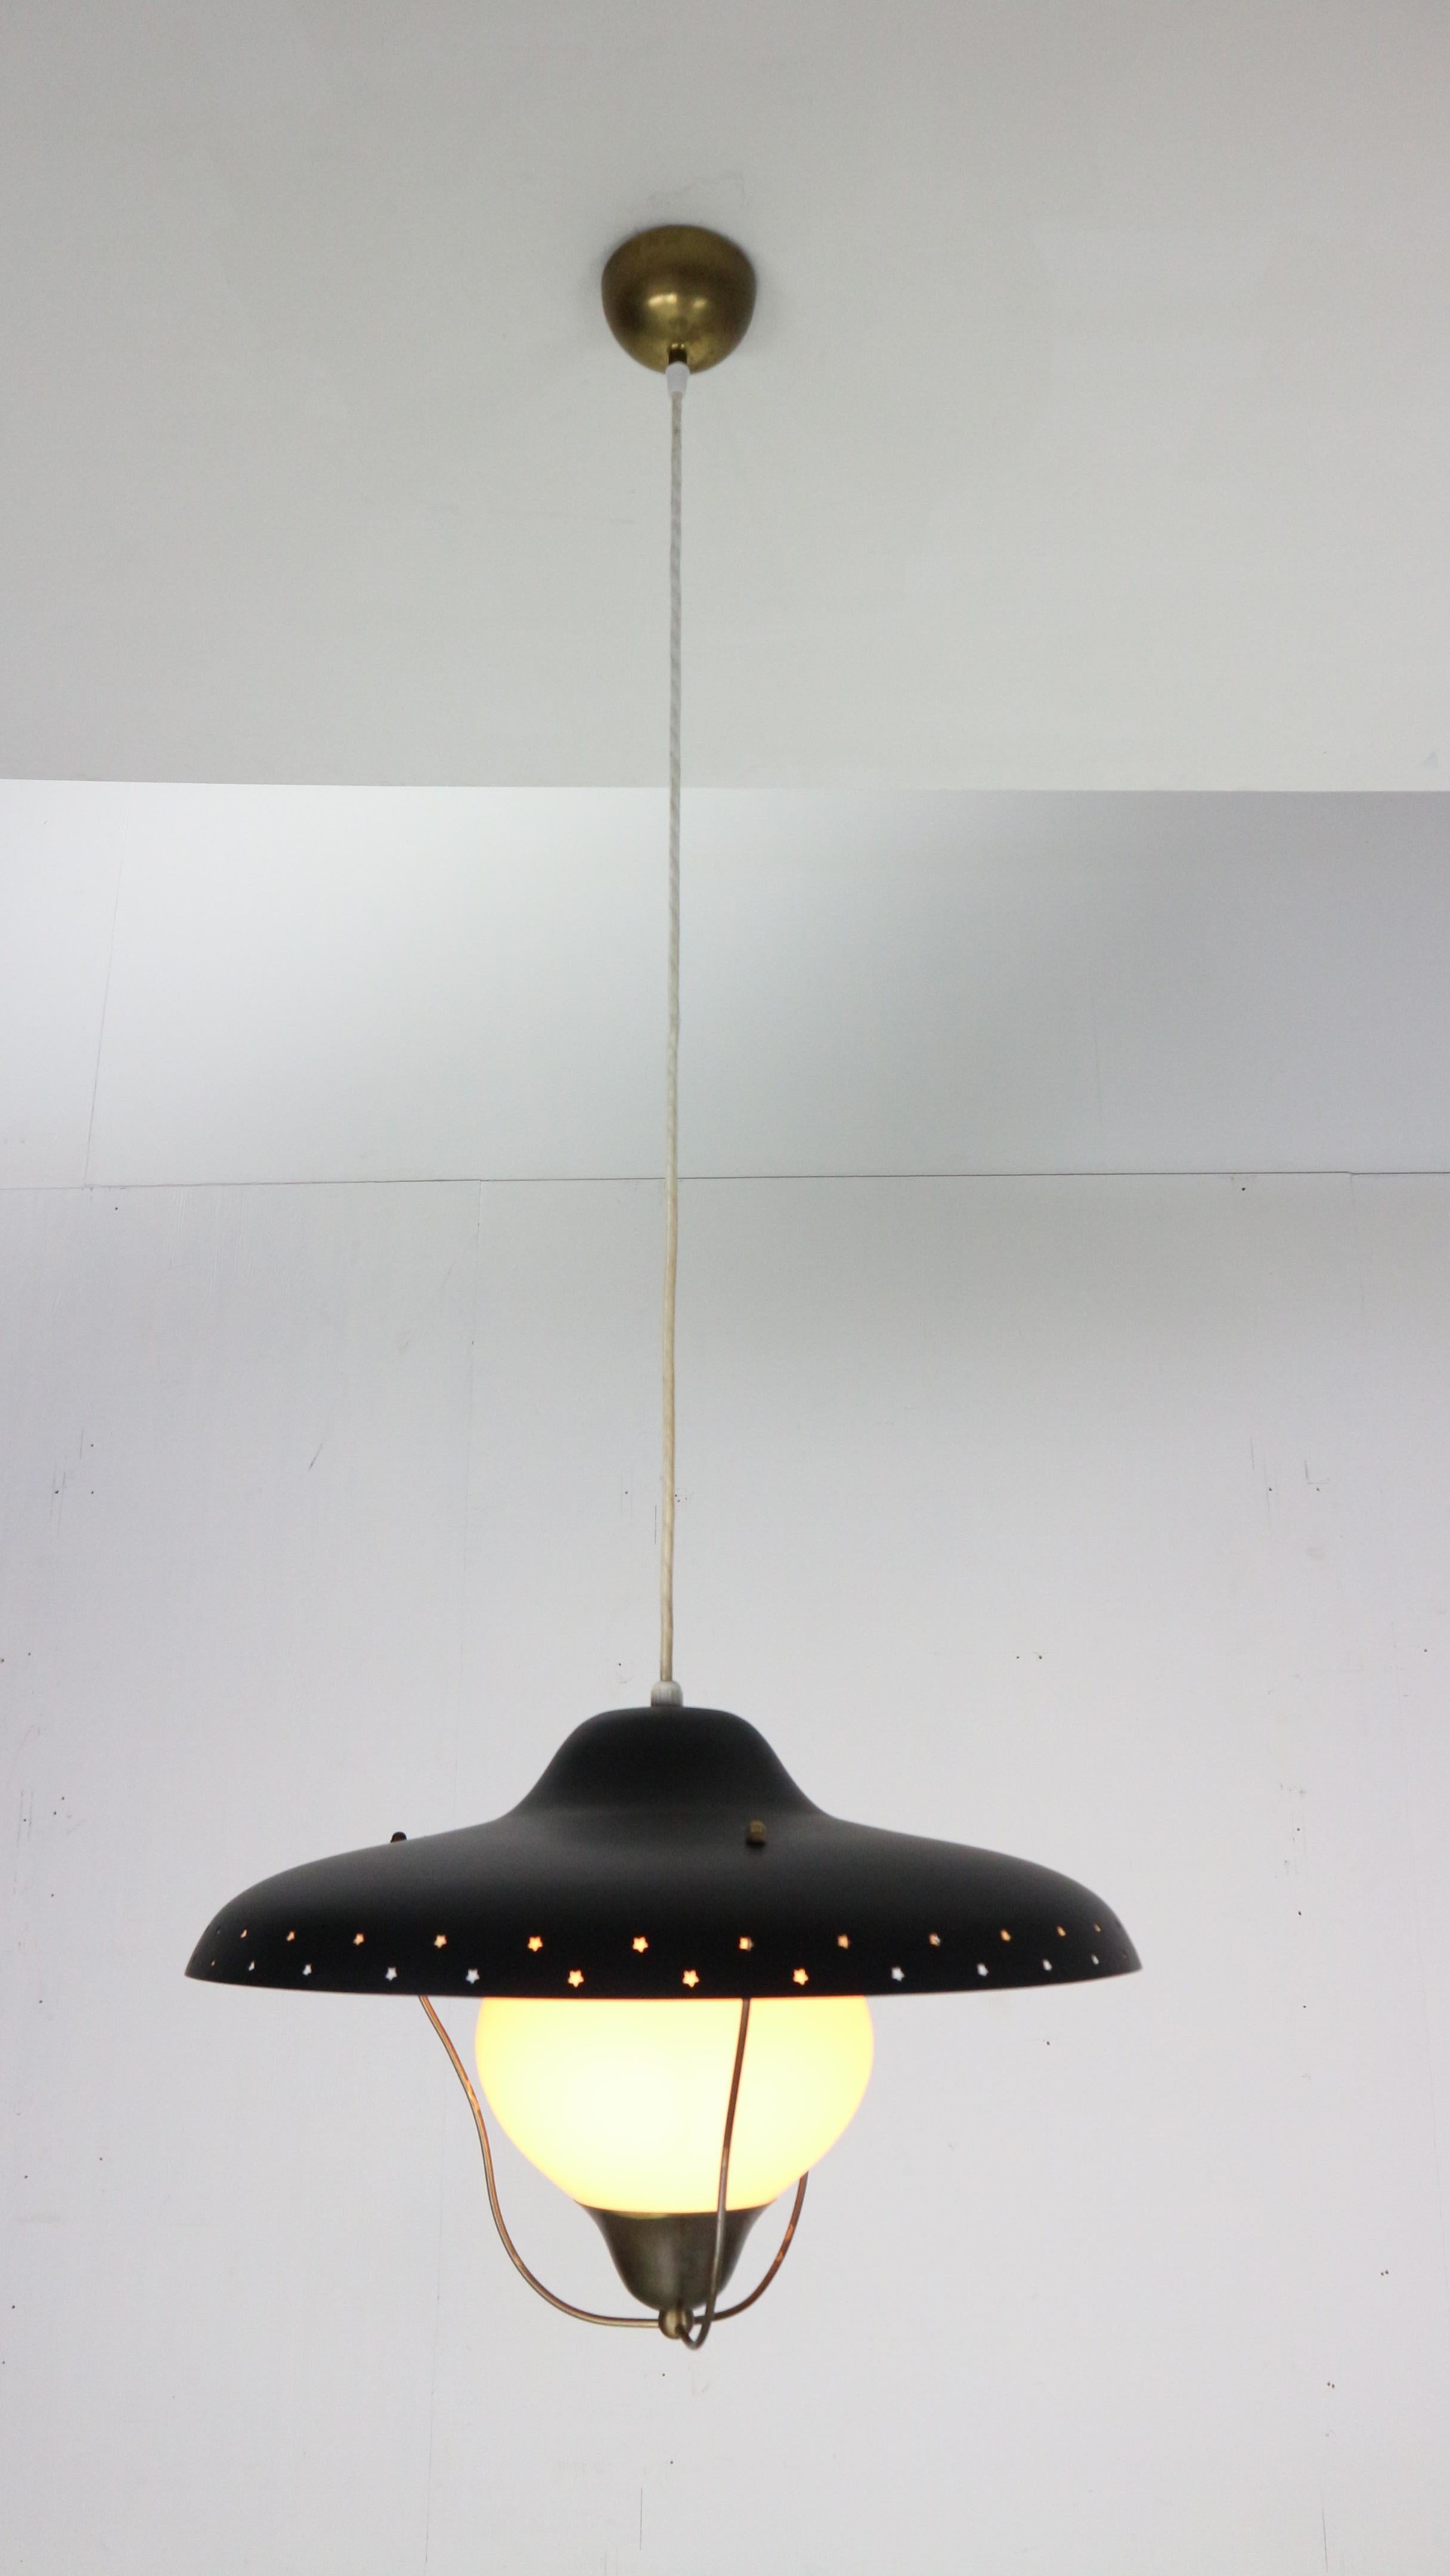 Pendentif en laiton, laqué noir et verre opalin conçu par Bent Karlby et produit par Lyfa, Danemark, années 1950. L'abat-jour présente des étoiles perforées et le verre est maintenu par une base en laiton.
La lampe mesure 25x45cm et est réglable en